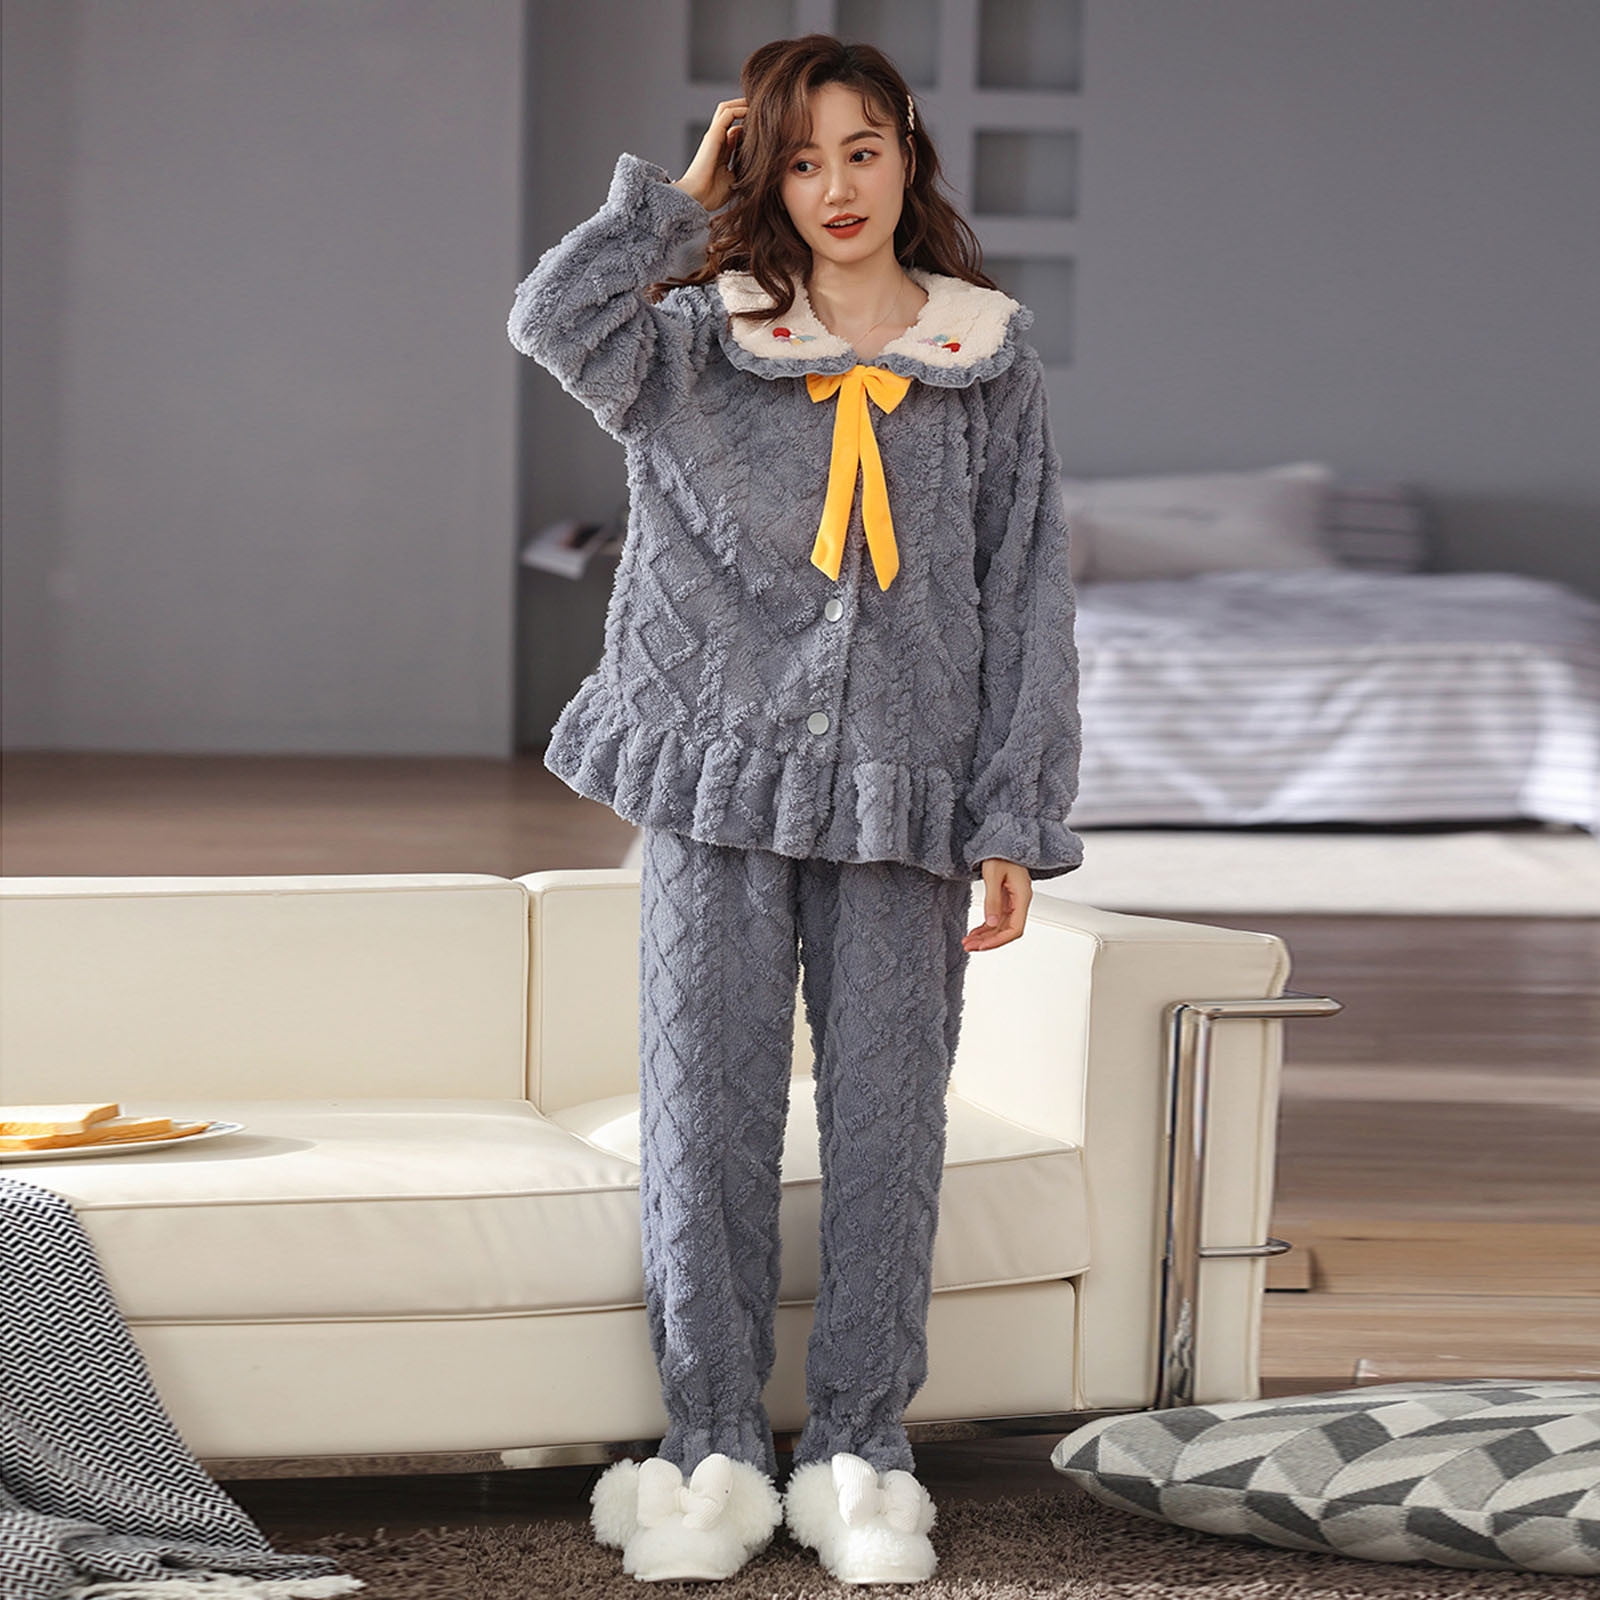 Rxozrxoz Pajama Sets for Women 2 Piece Fleece Fuzzy Fluffy Pajamas